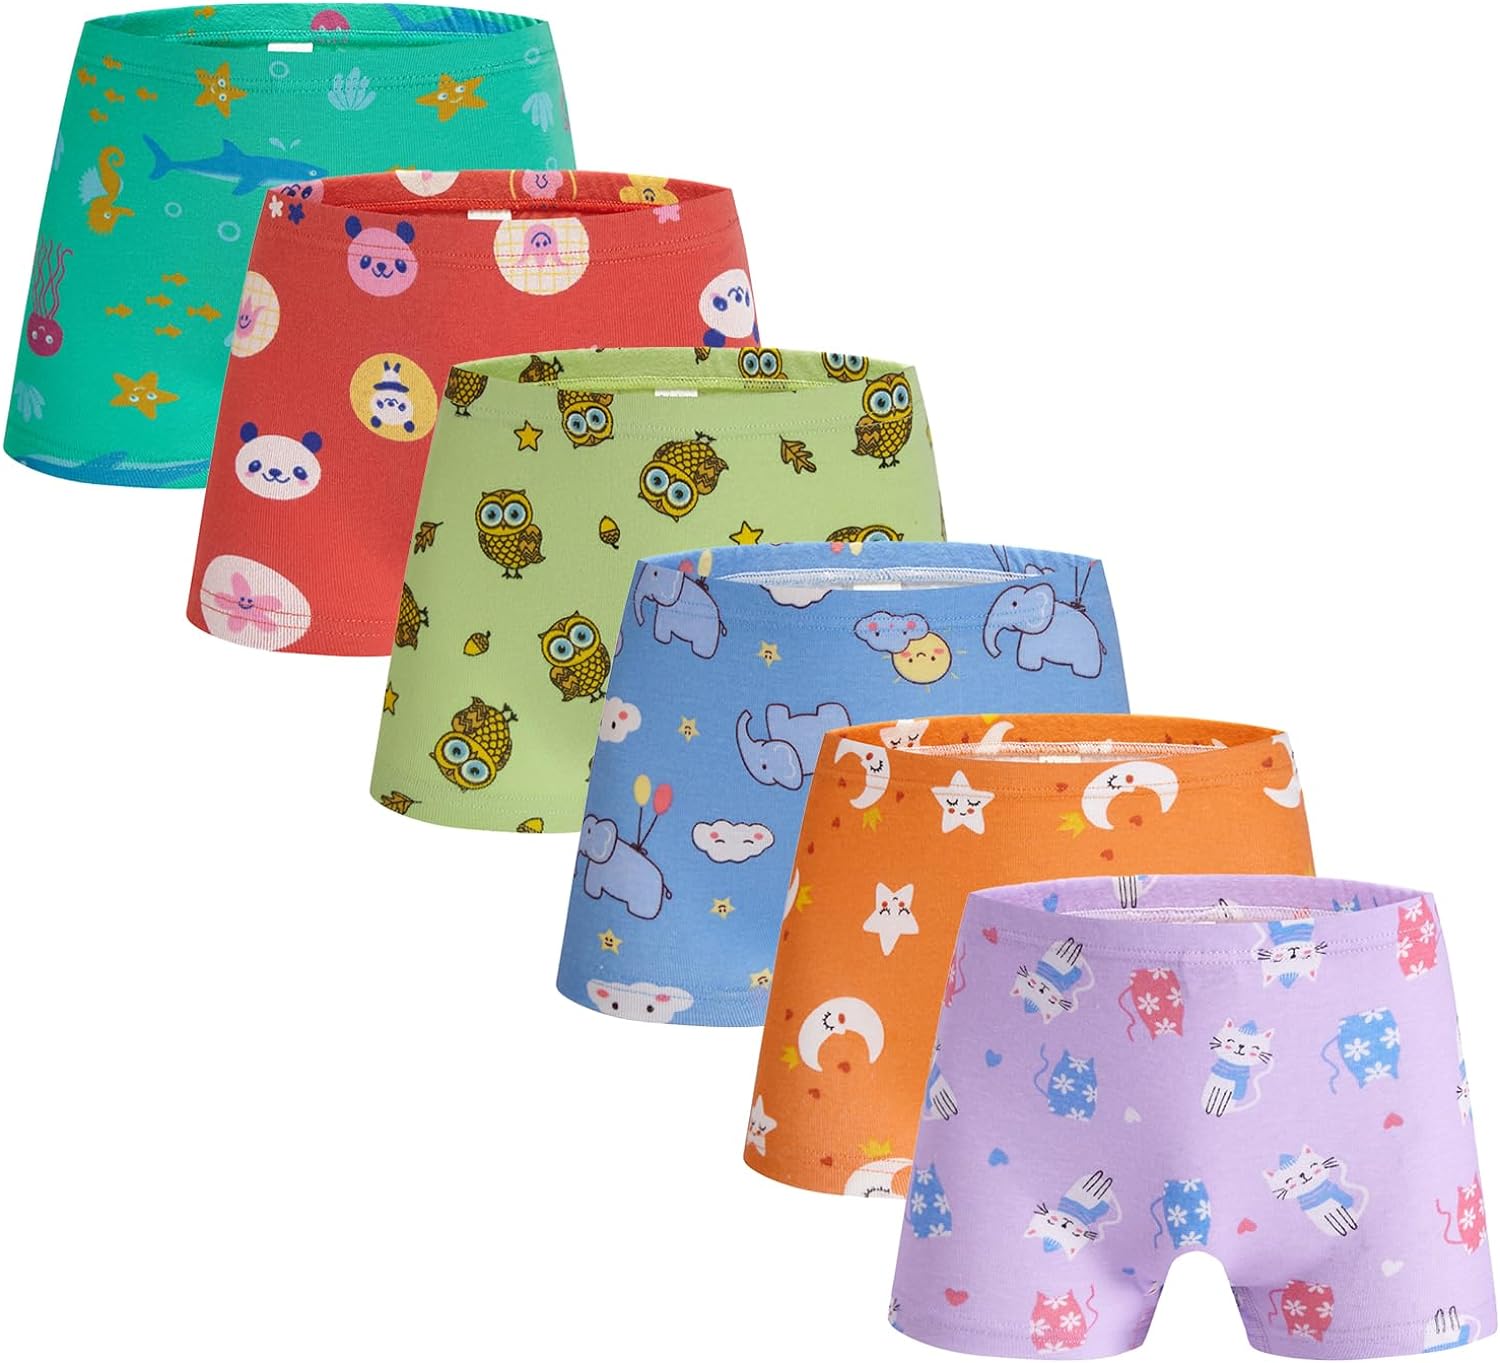 Boboking Soft Cotton Underwear Toddler Thailand